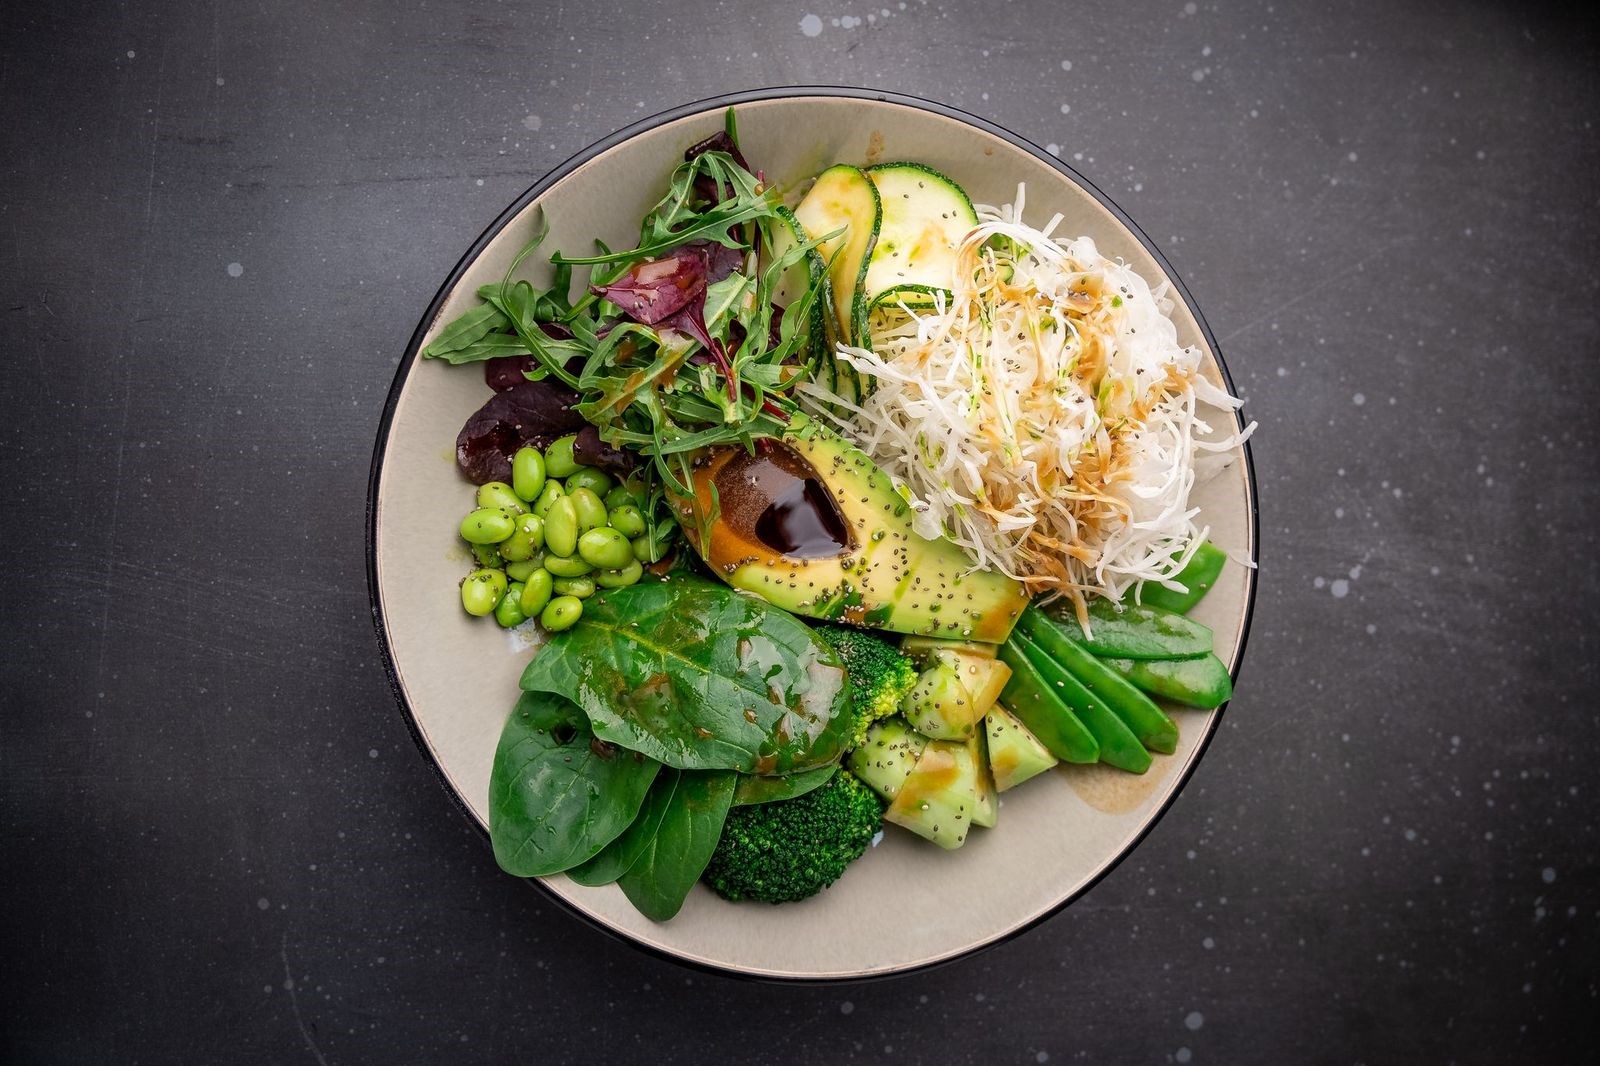 Салат с авокадо — вкусные и простые рецепты